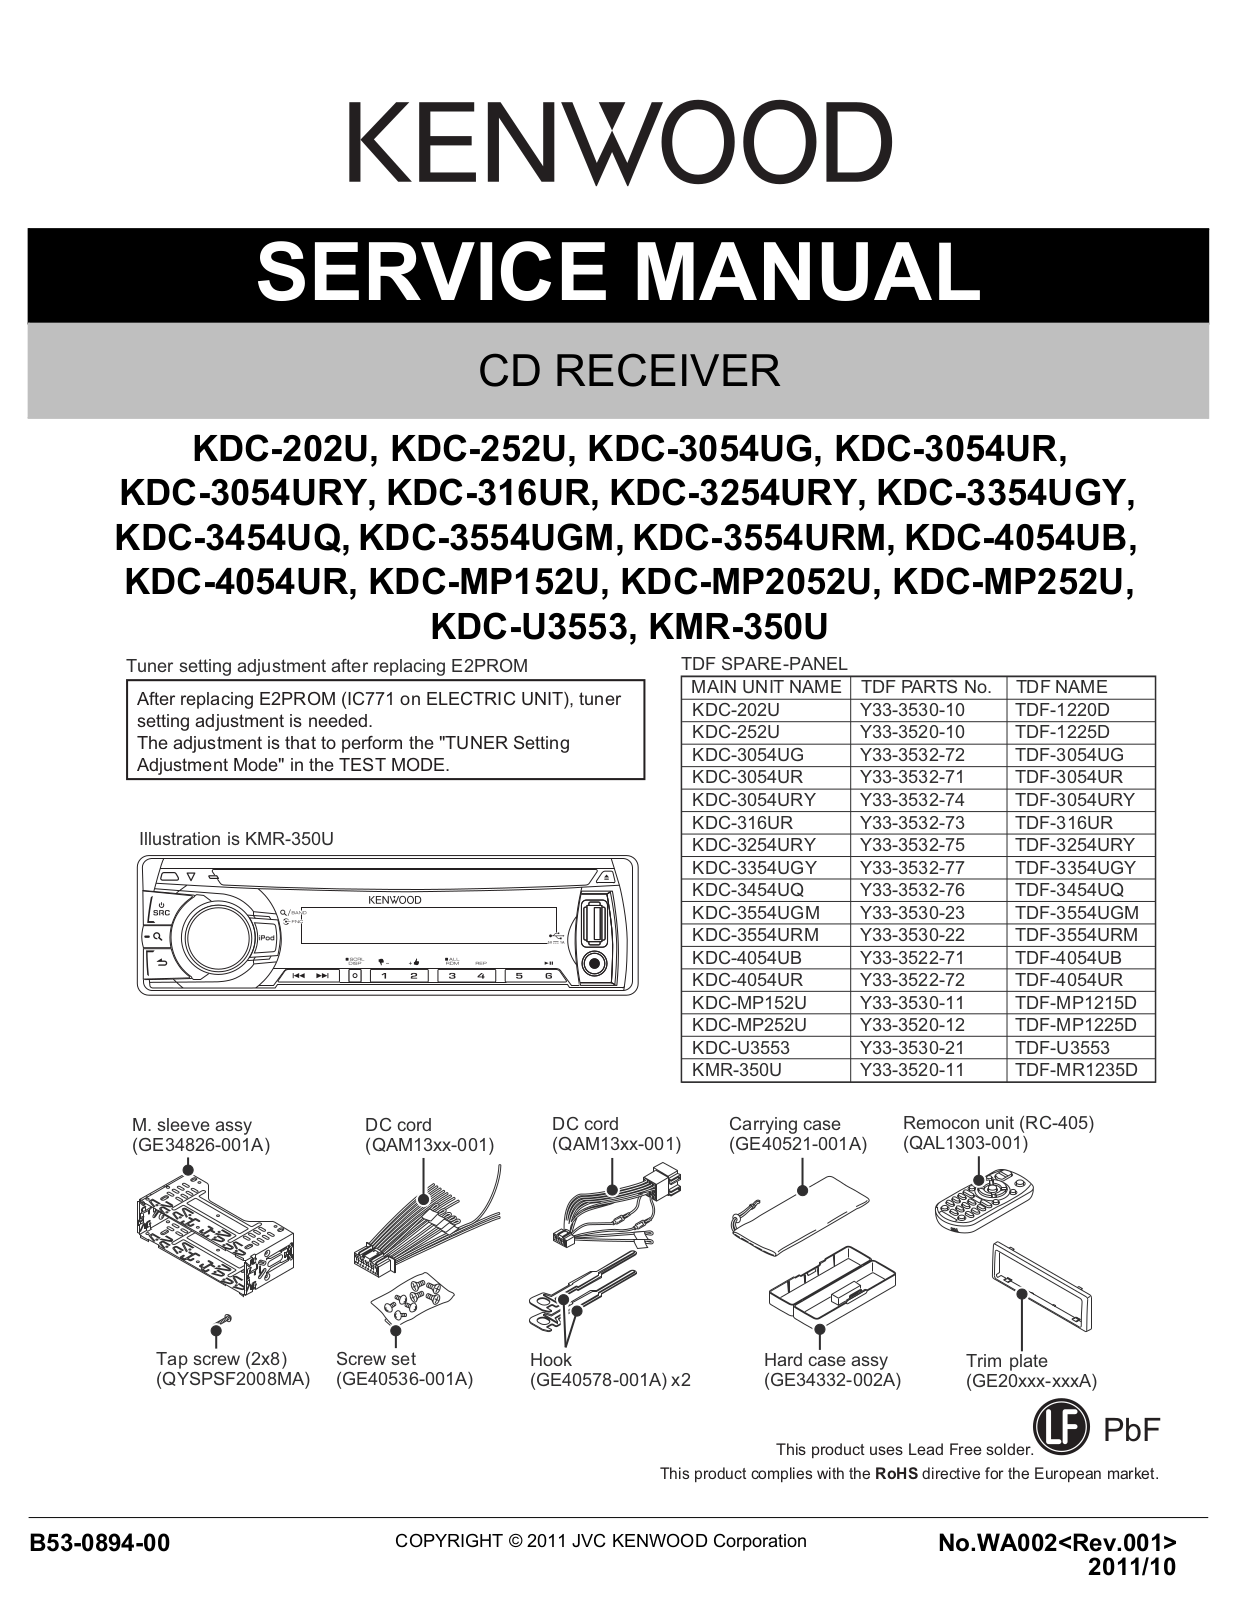 Kenwood KDC-202U, KDC-252U, KDC-3054UG, KDC-3054UR, KDC-3054URY Service manual